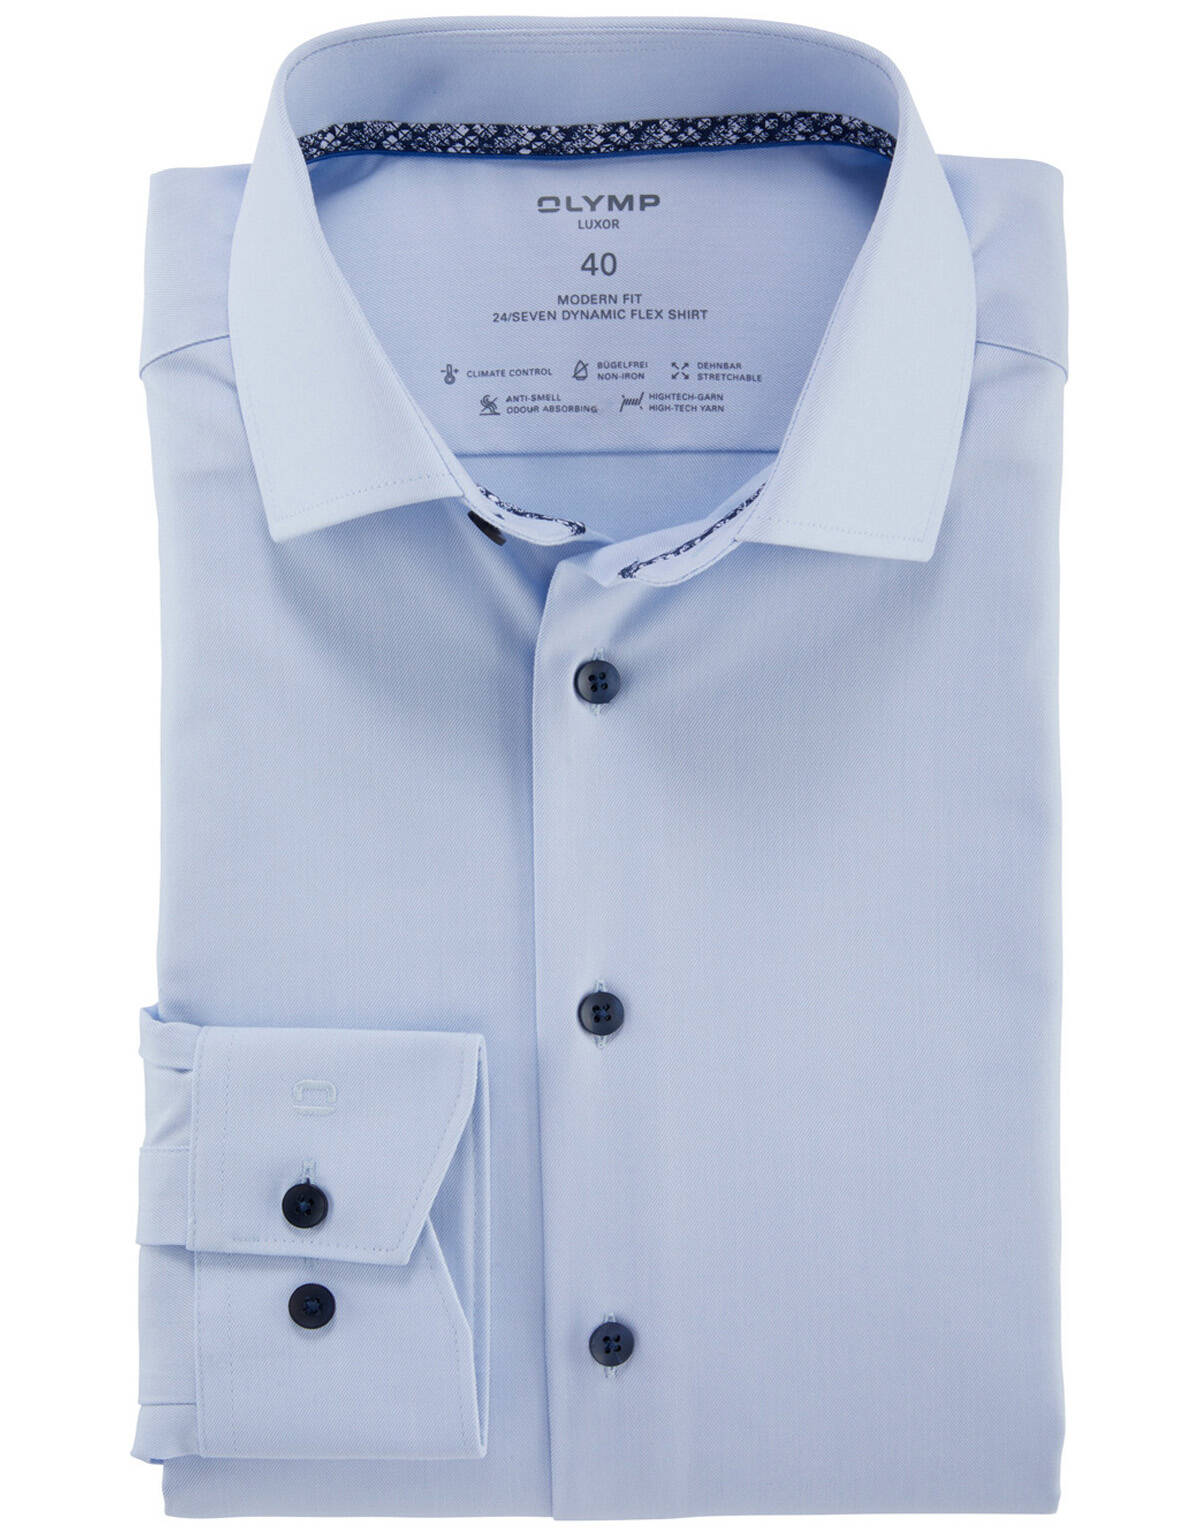 Рубашка OLYMP Luxor 24/7, modern fit, высокий рост[ГОЛУБОЙ]